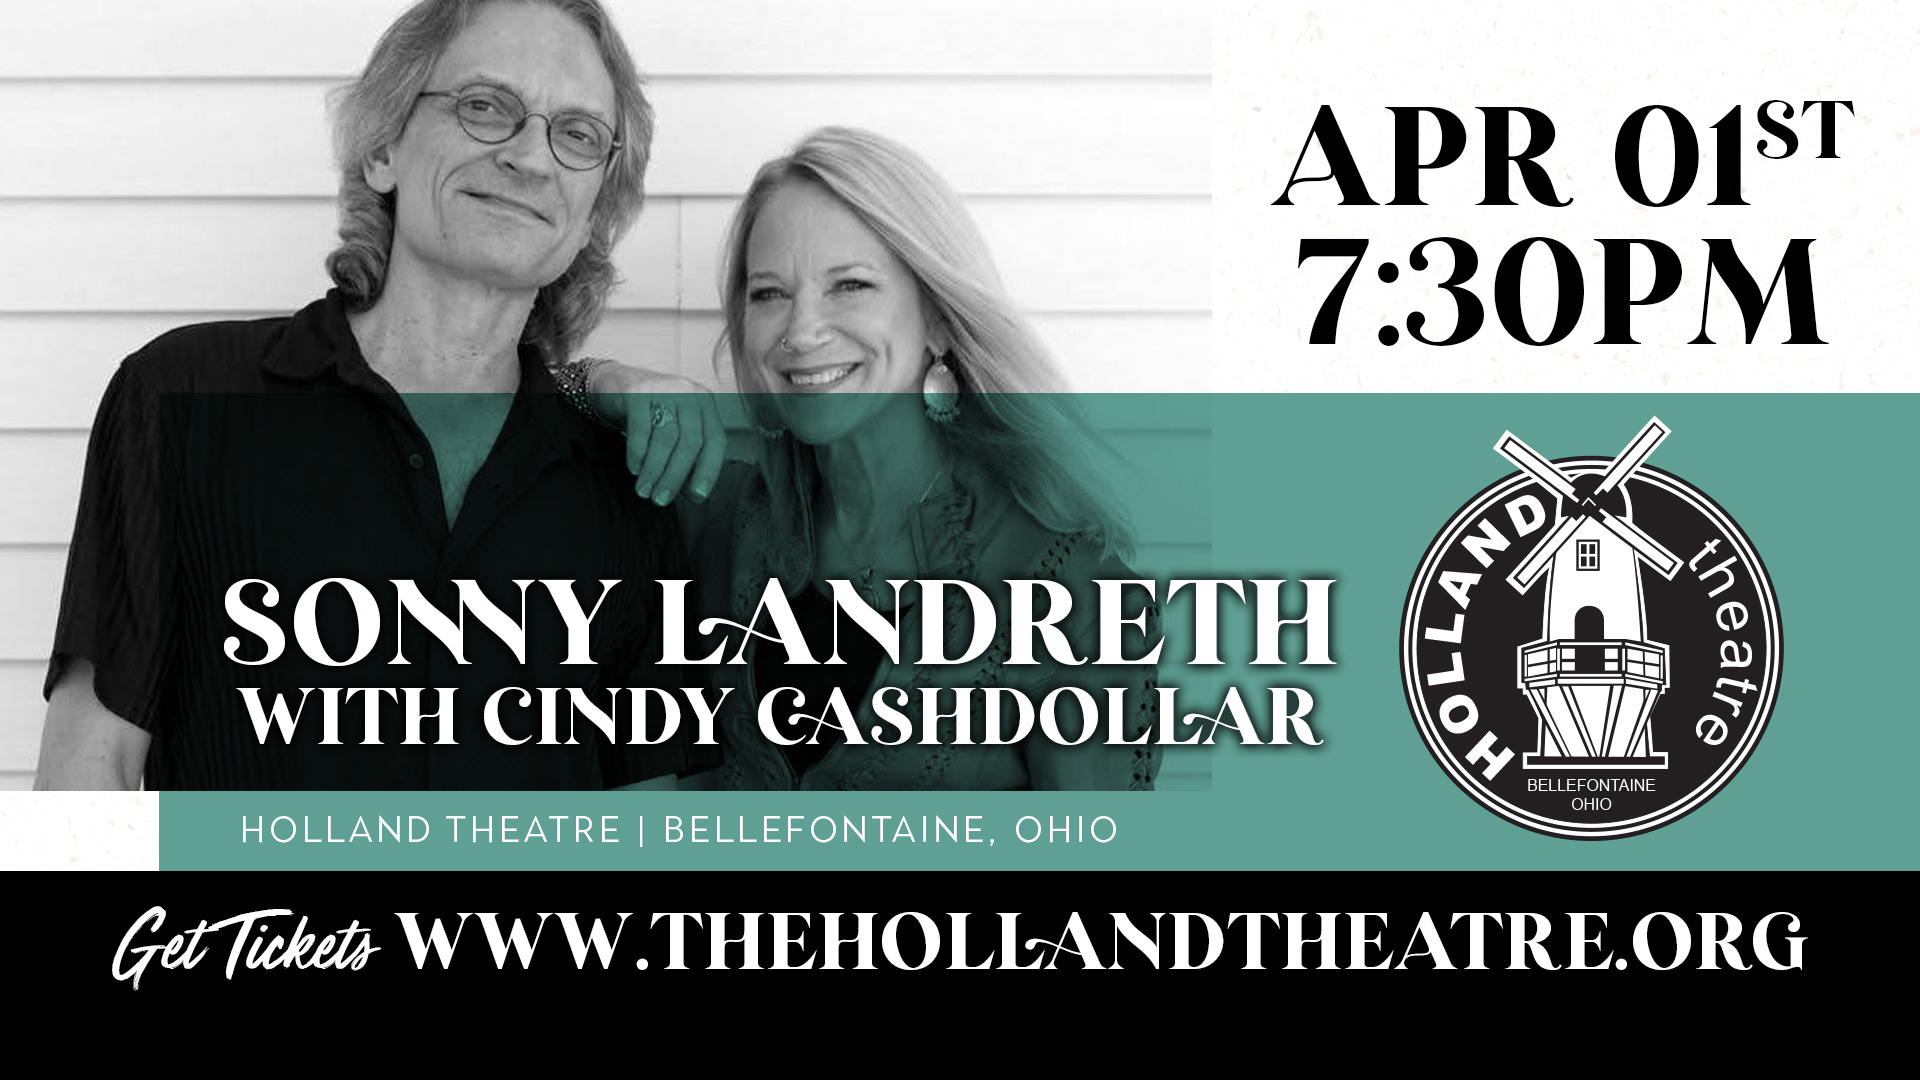 Sonny Landreth with Cindy Cashdollar